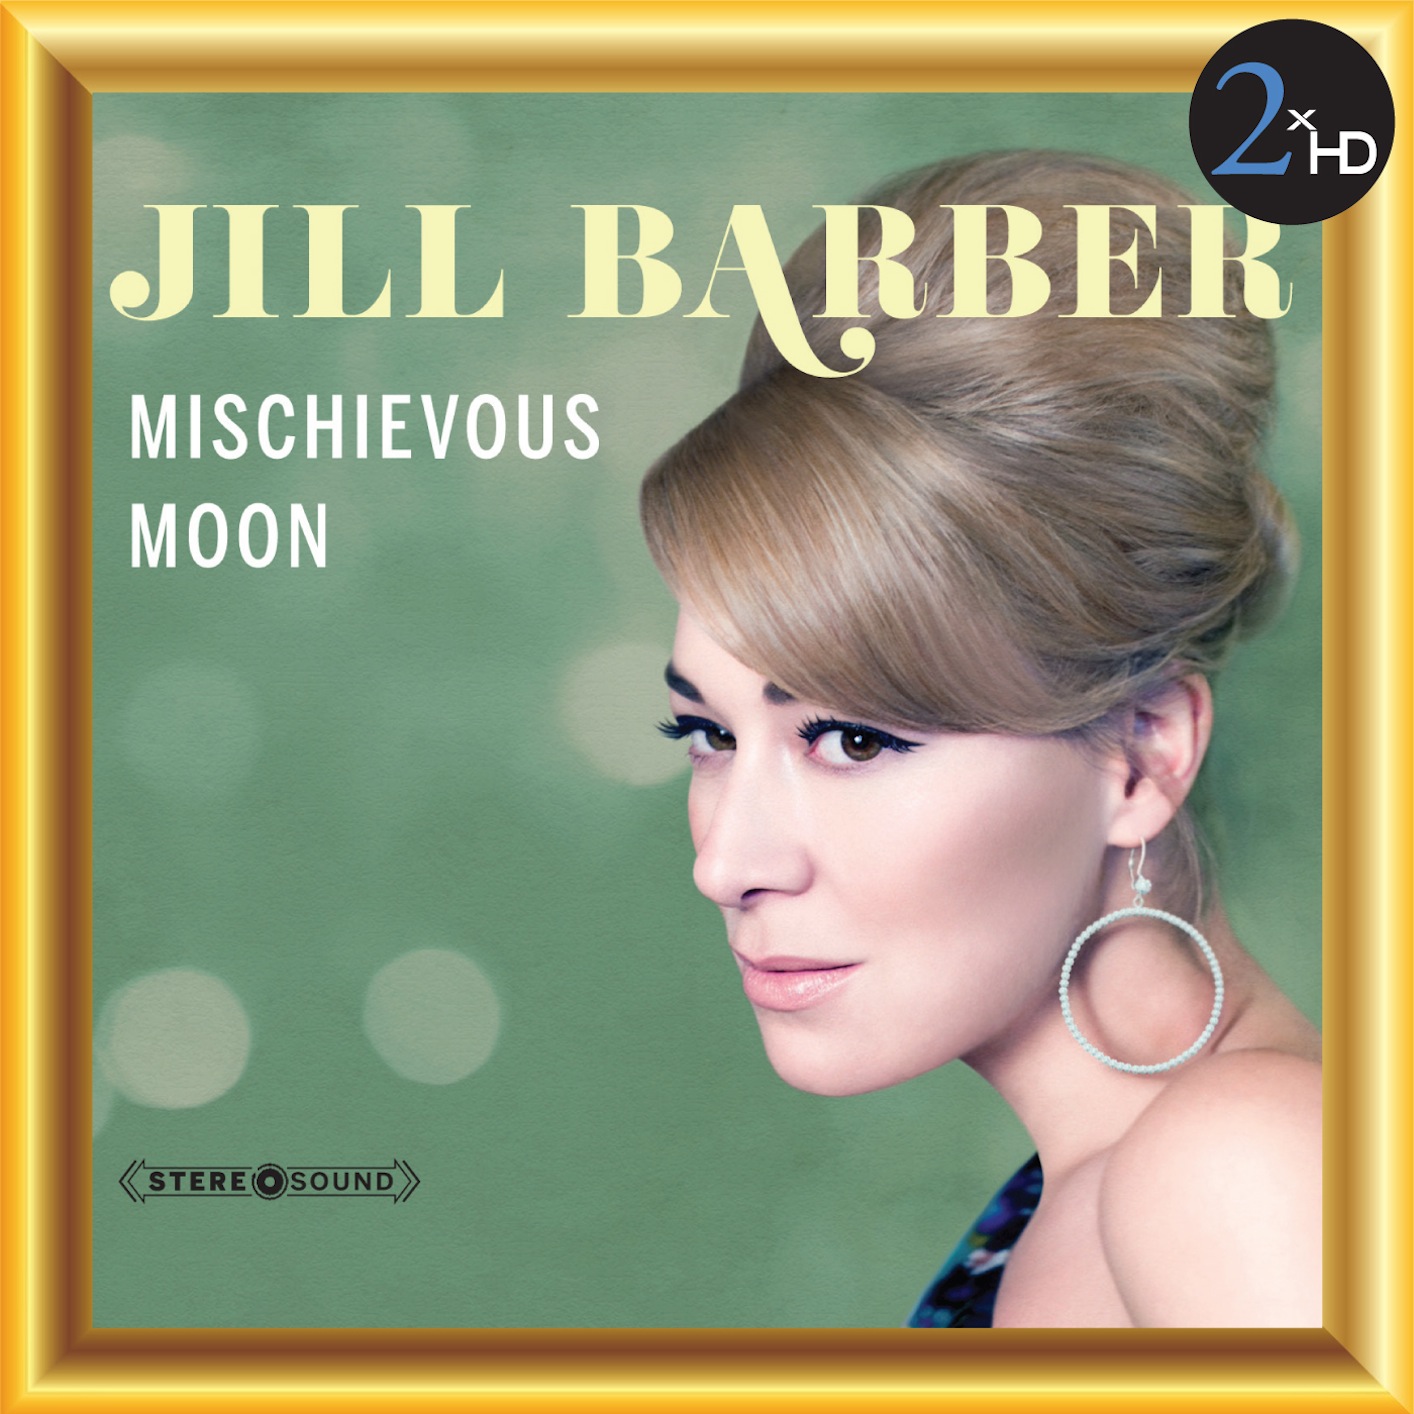 Jill Barber - Mischievous Moon (2013) [FLAC 24bit/48kHz]